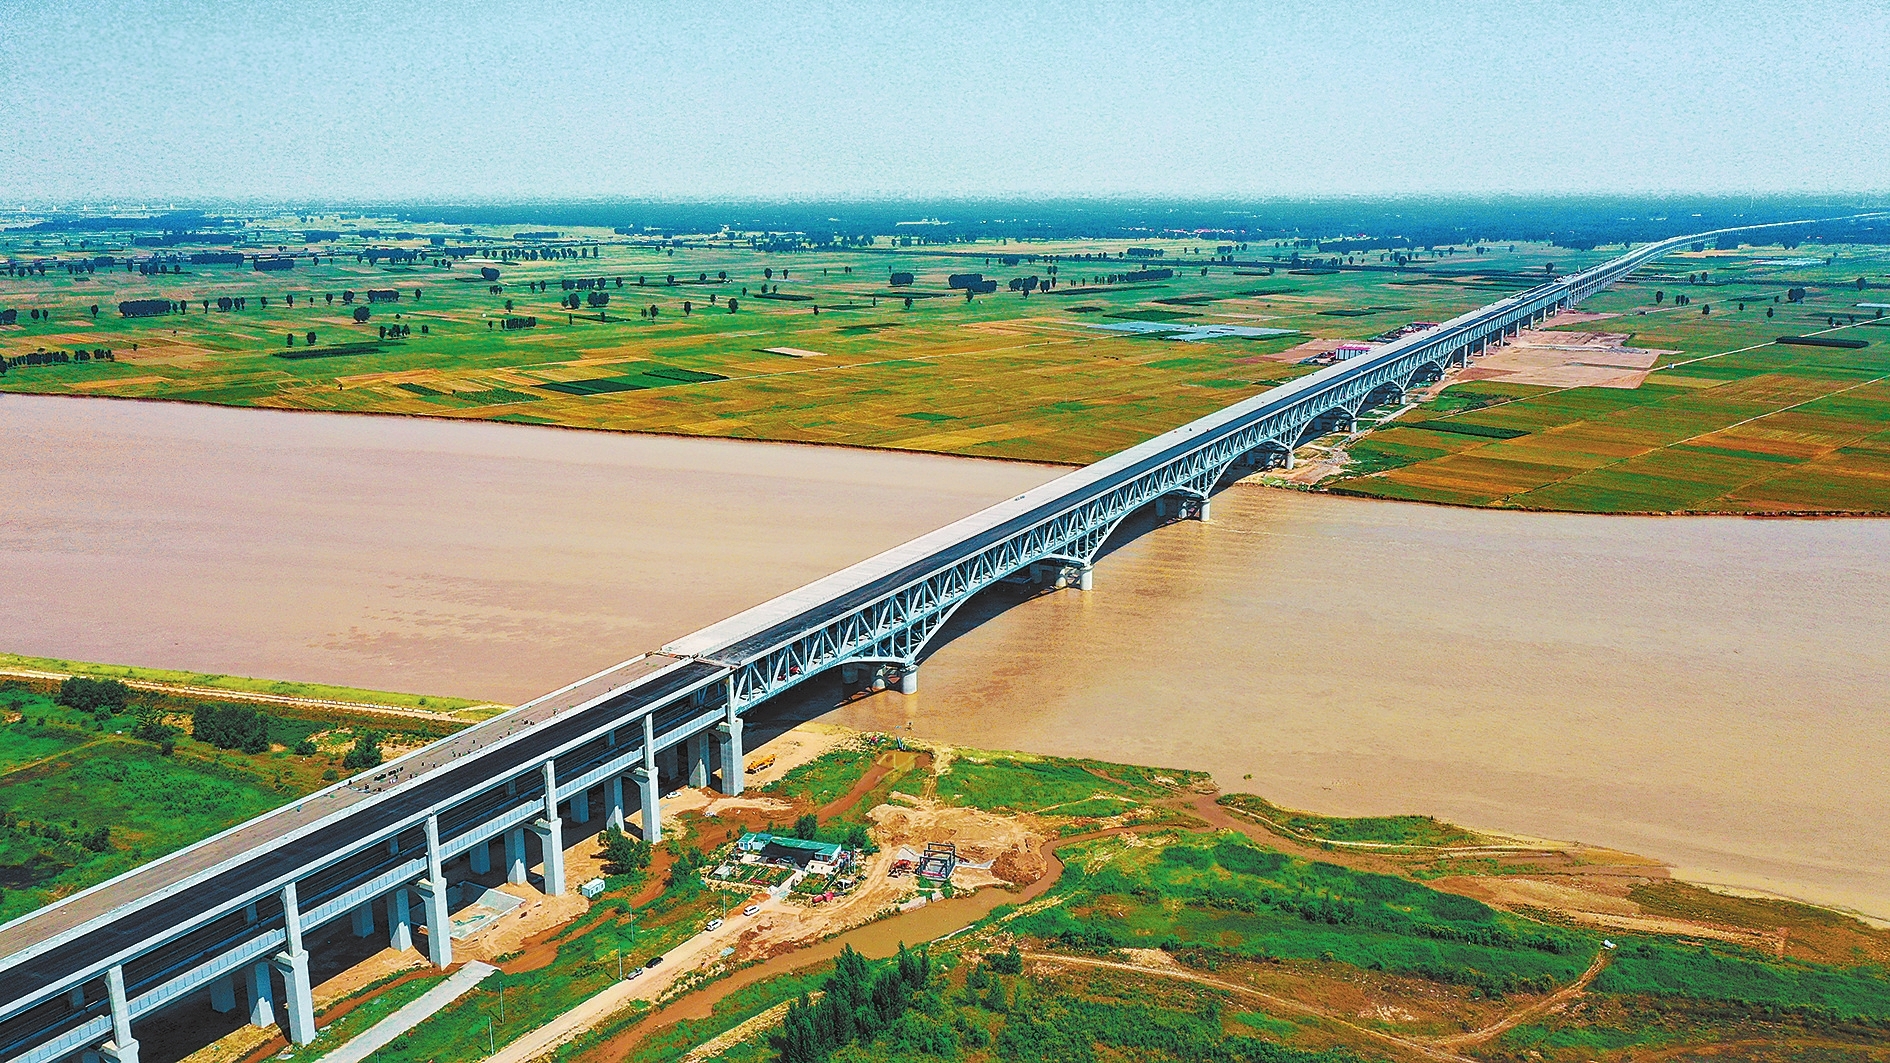 6月30日,郑(州)济(南)铁路郑州黄河特大桥主桥已进入最后施工阶段